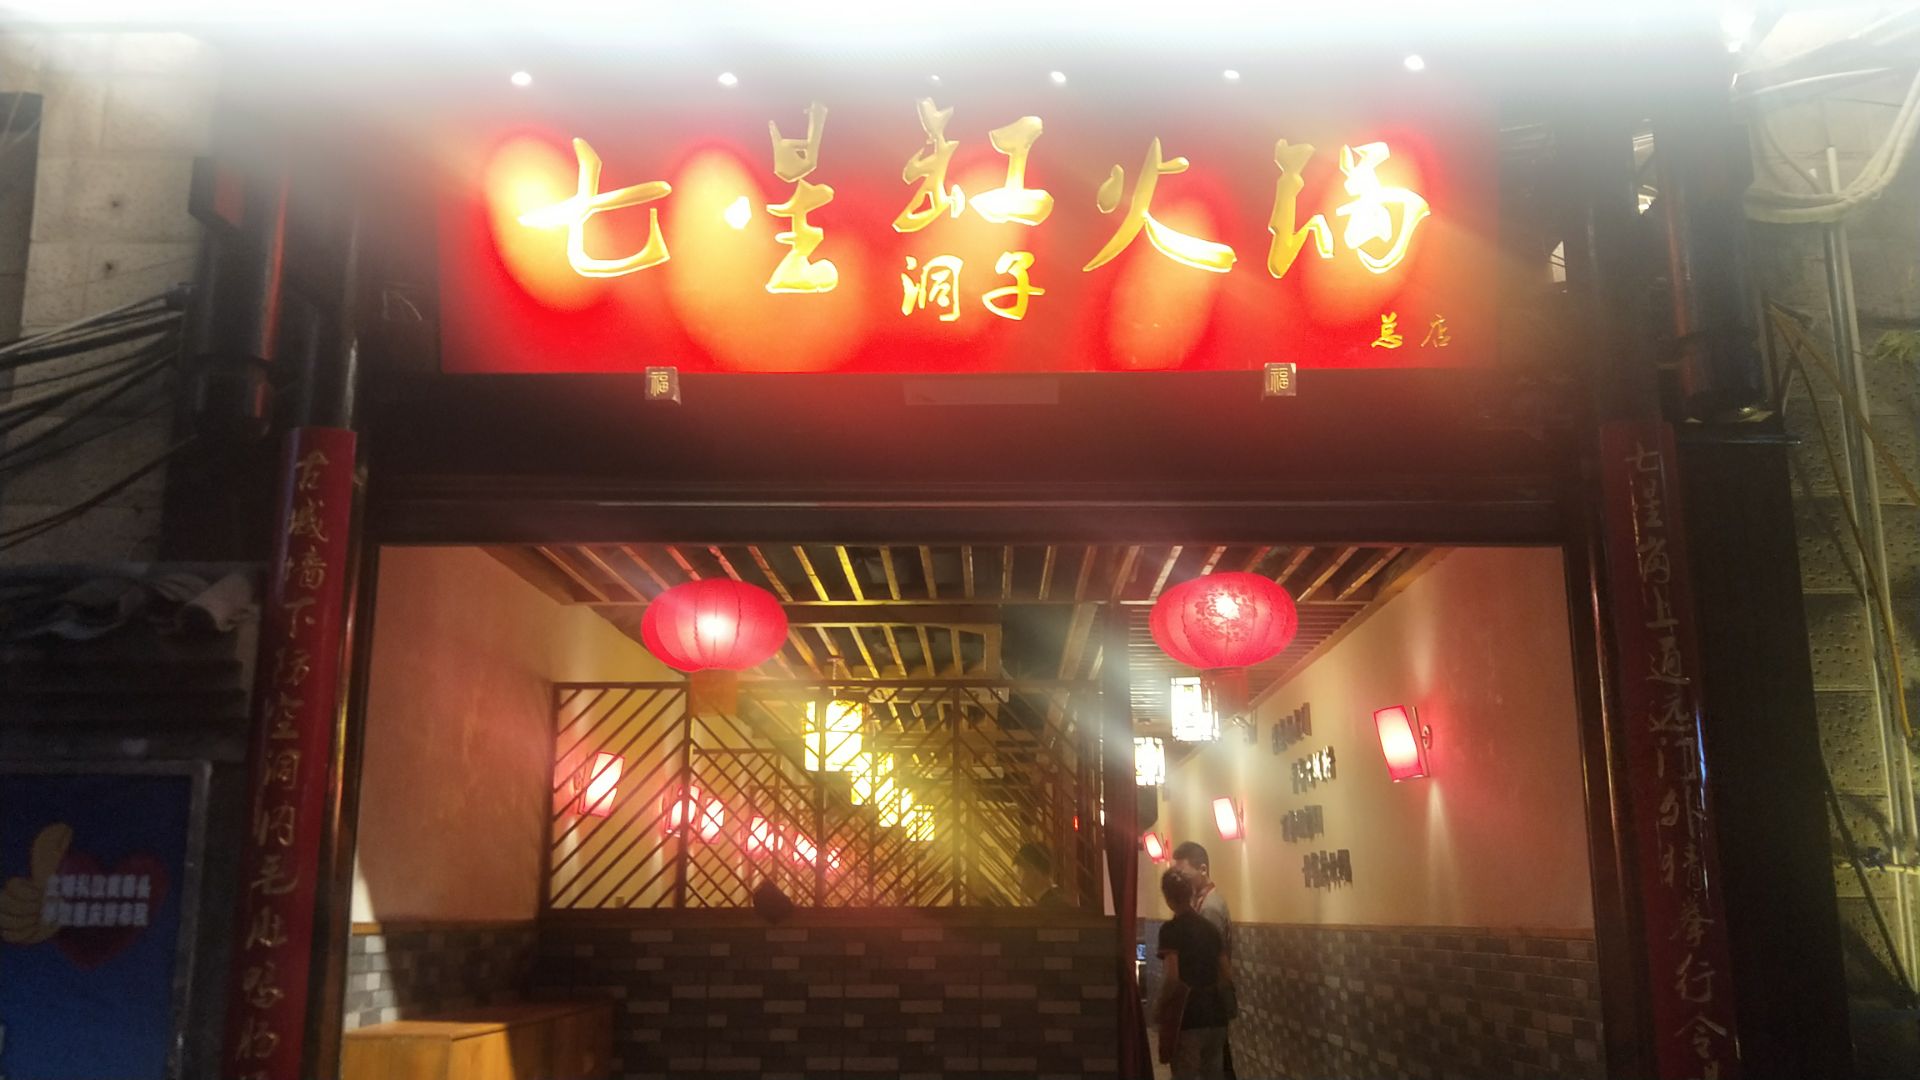 重庆老城区著名的“洞子火锅”，就餐环境很特别，游客吃完直说辣 -6park.com